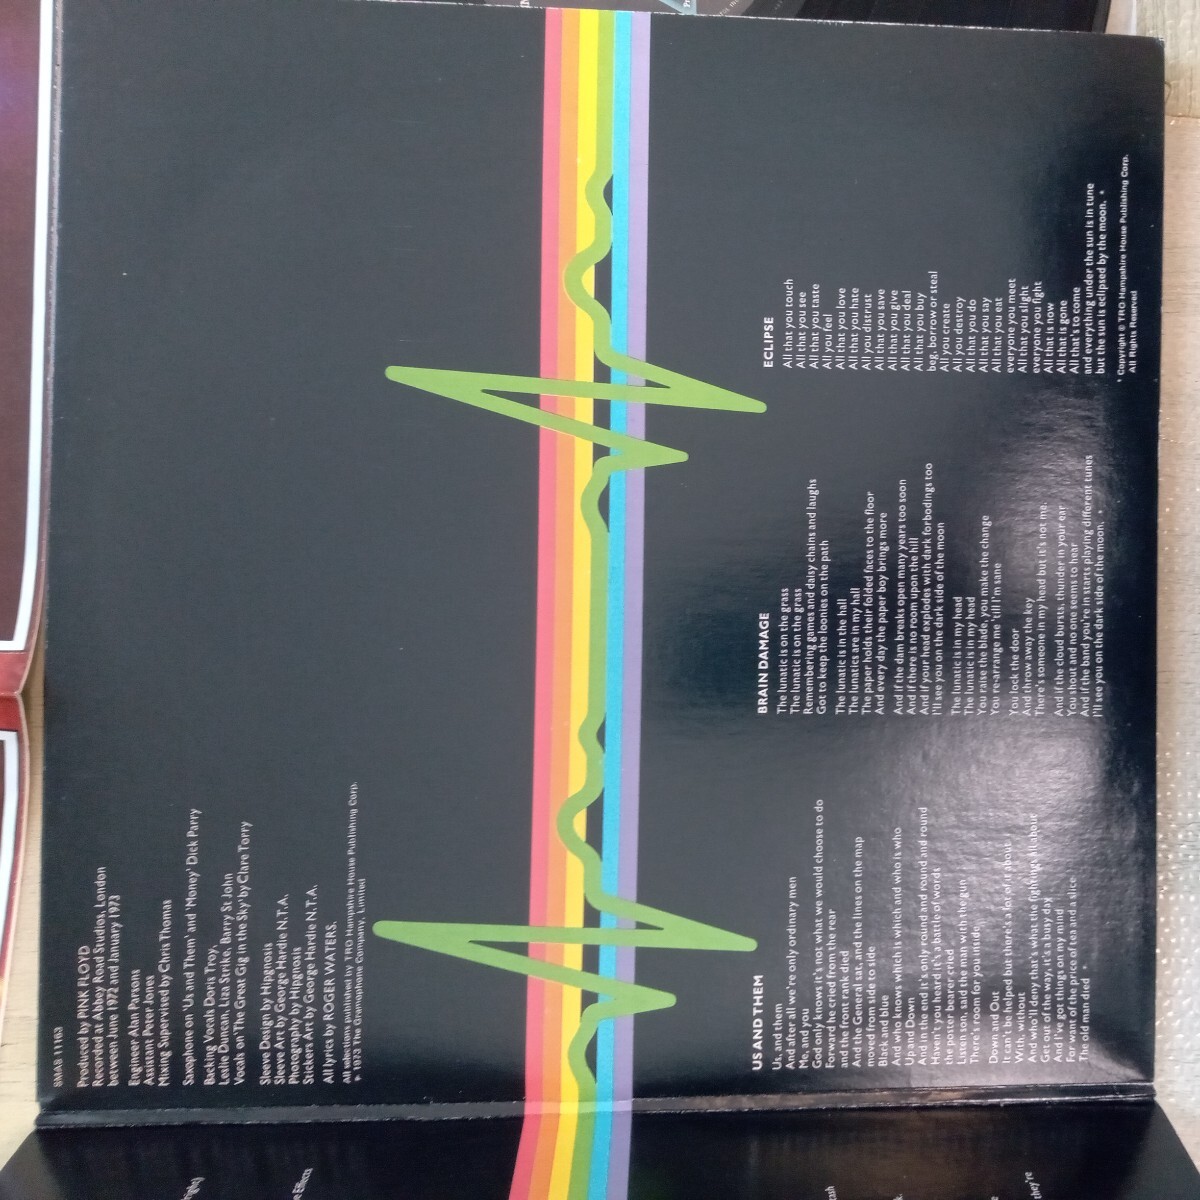 US Pink Floyd ピンク フロイド darkside of the moon 狂気 analog record vinyl レコード アナログ lp の画像3